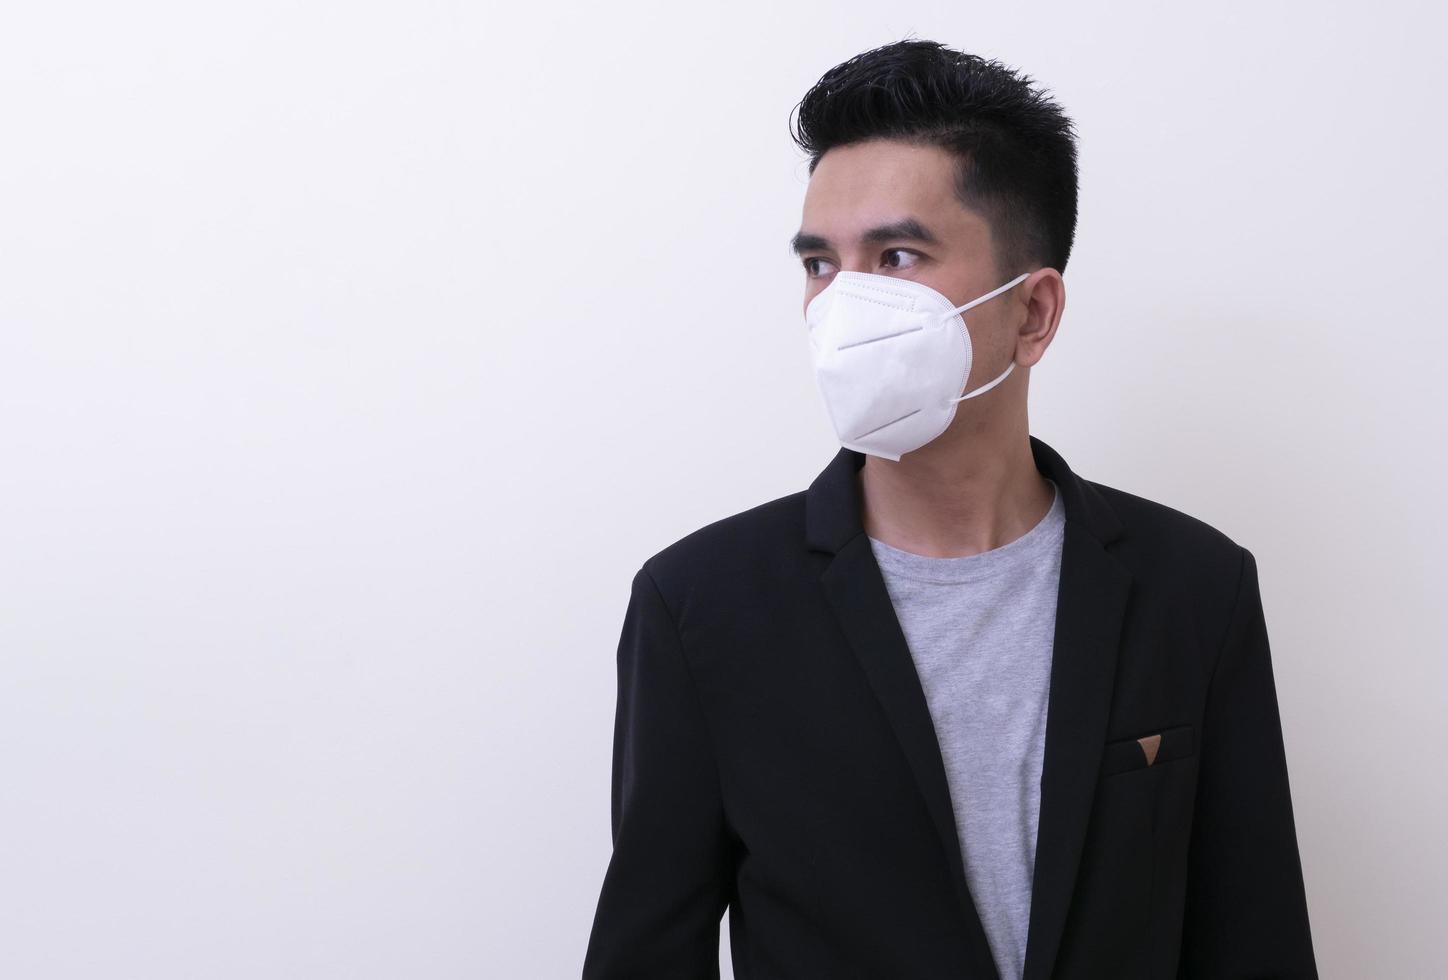 giovane asiatico e maschera medica per proteggere covid-19 foto